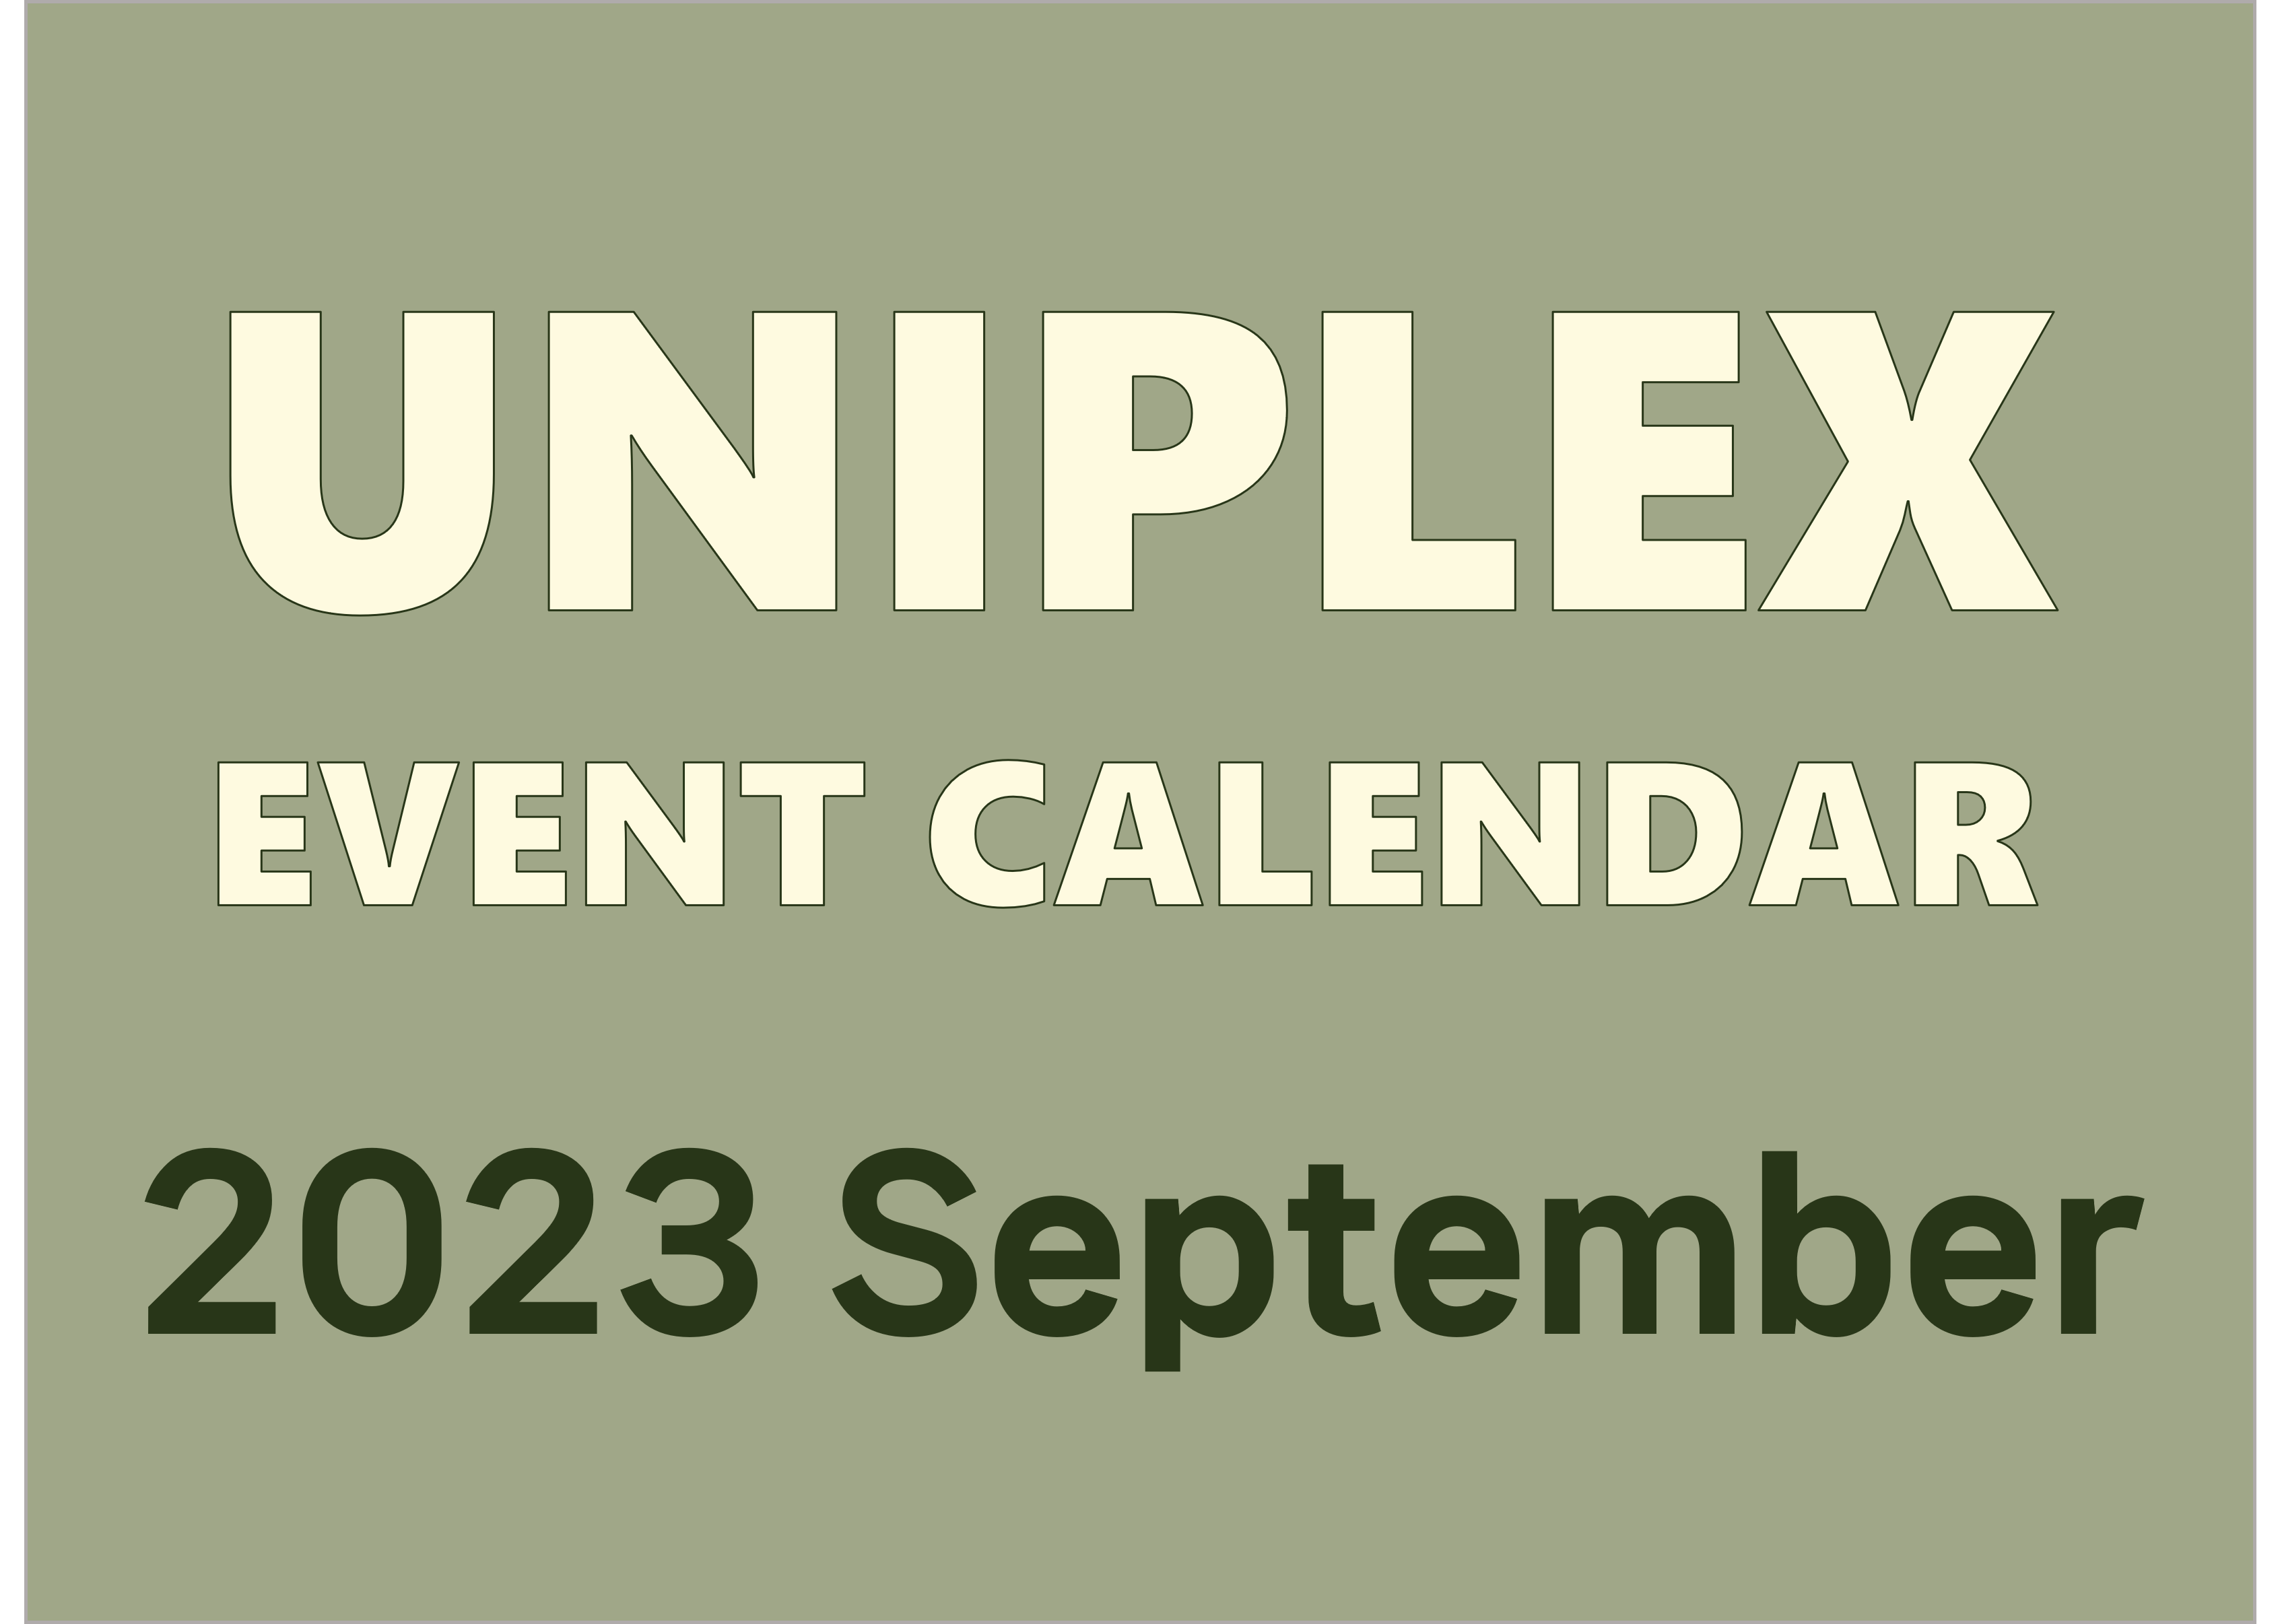 UNIPLEX EVENT CALENDAR (September 2023)